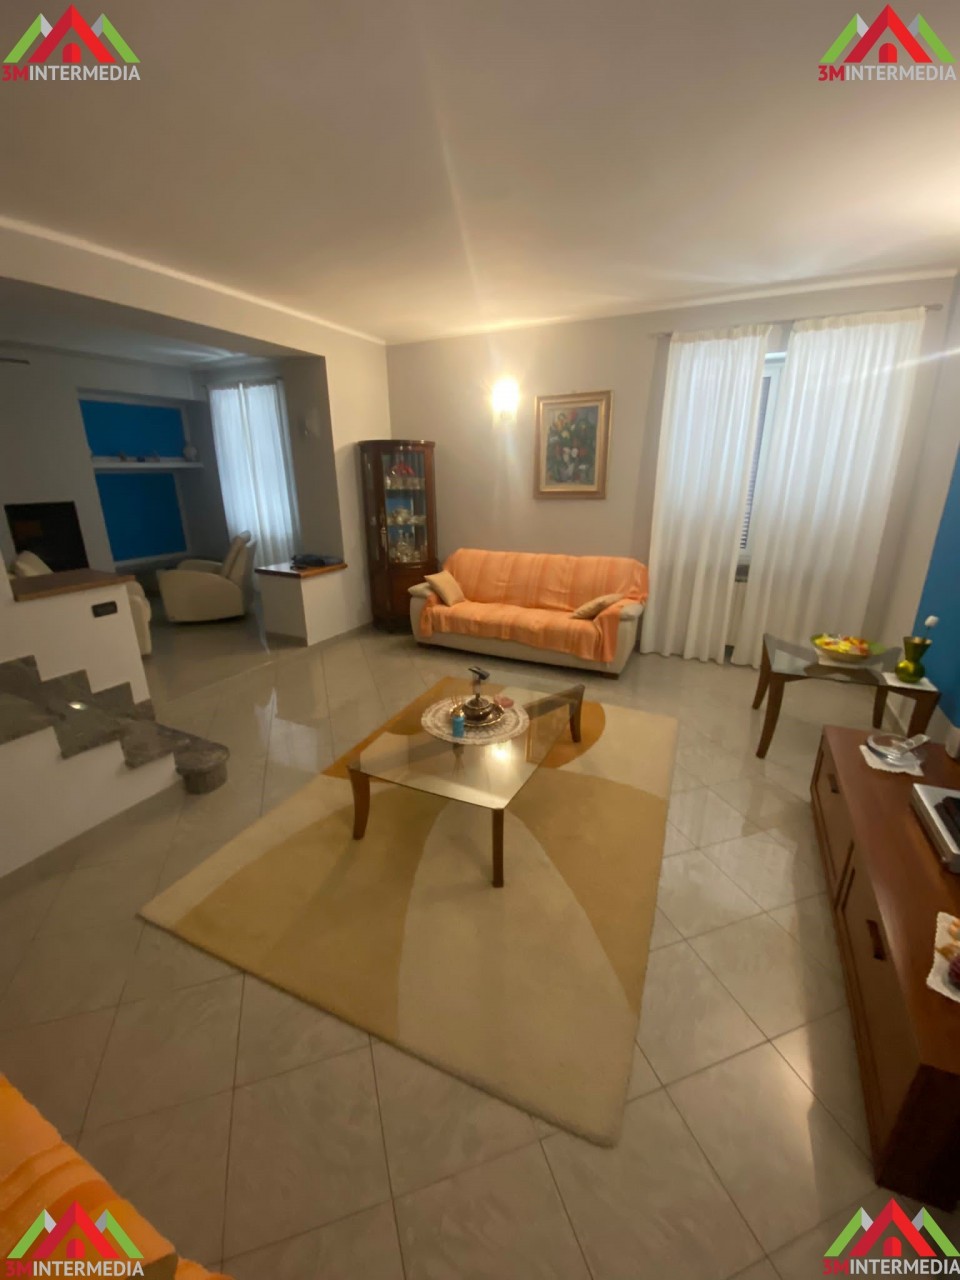 Appartamento in vendita a Valenza, 6 locali, prezzo € 280.000 | CambioCasa.it